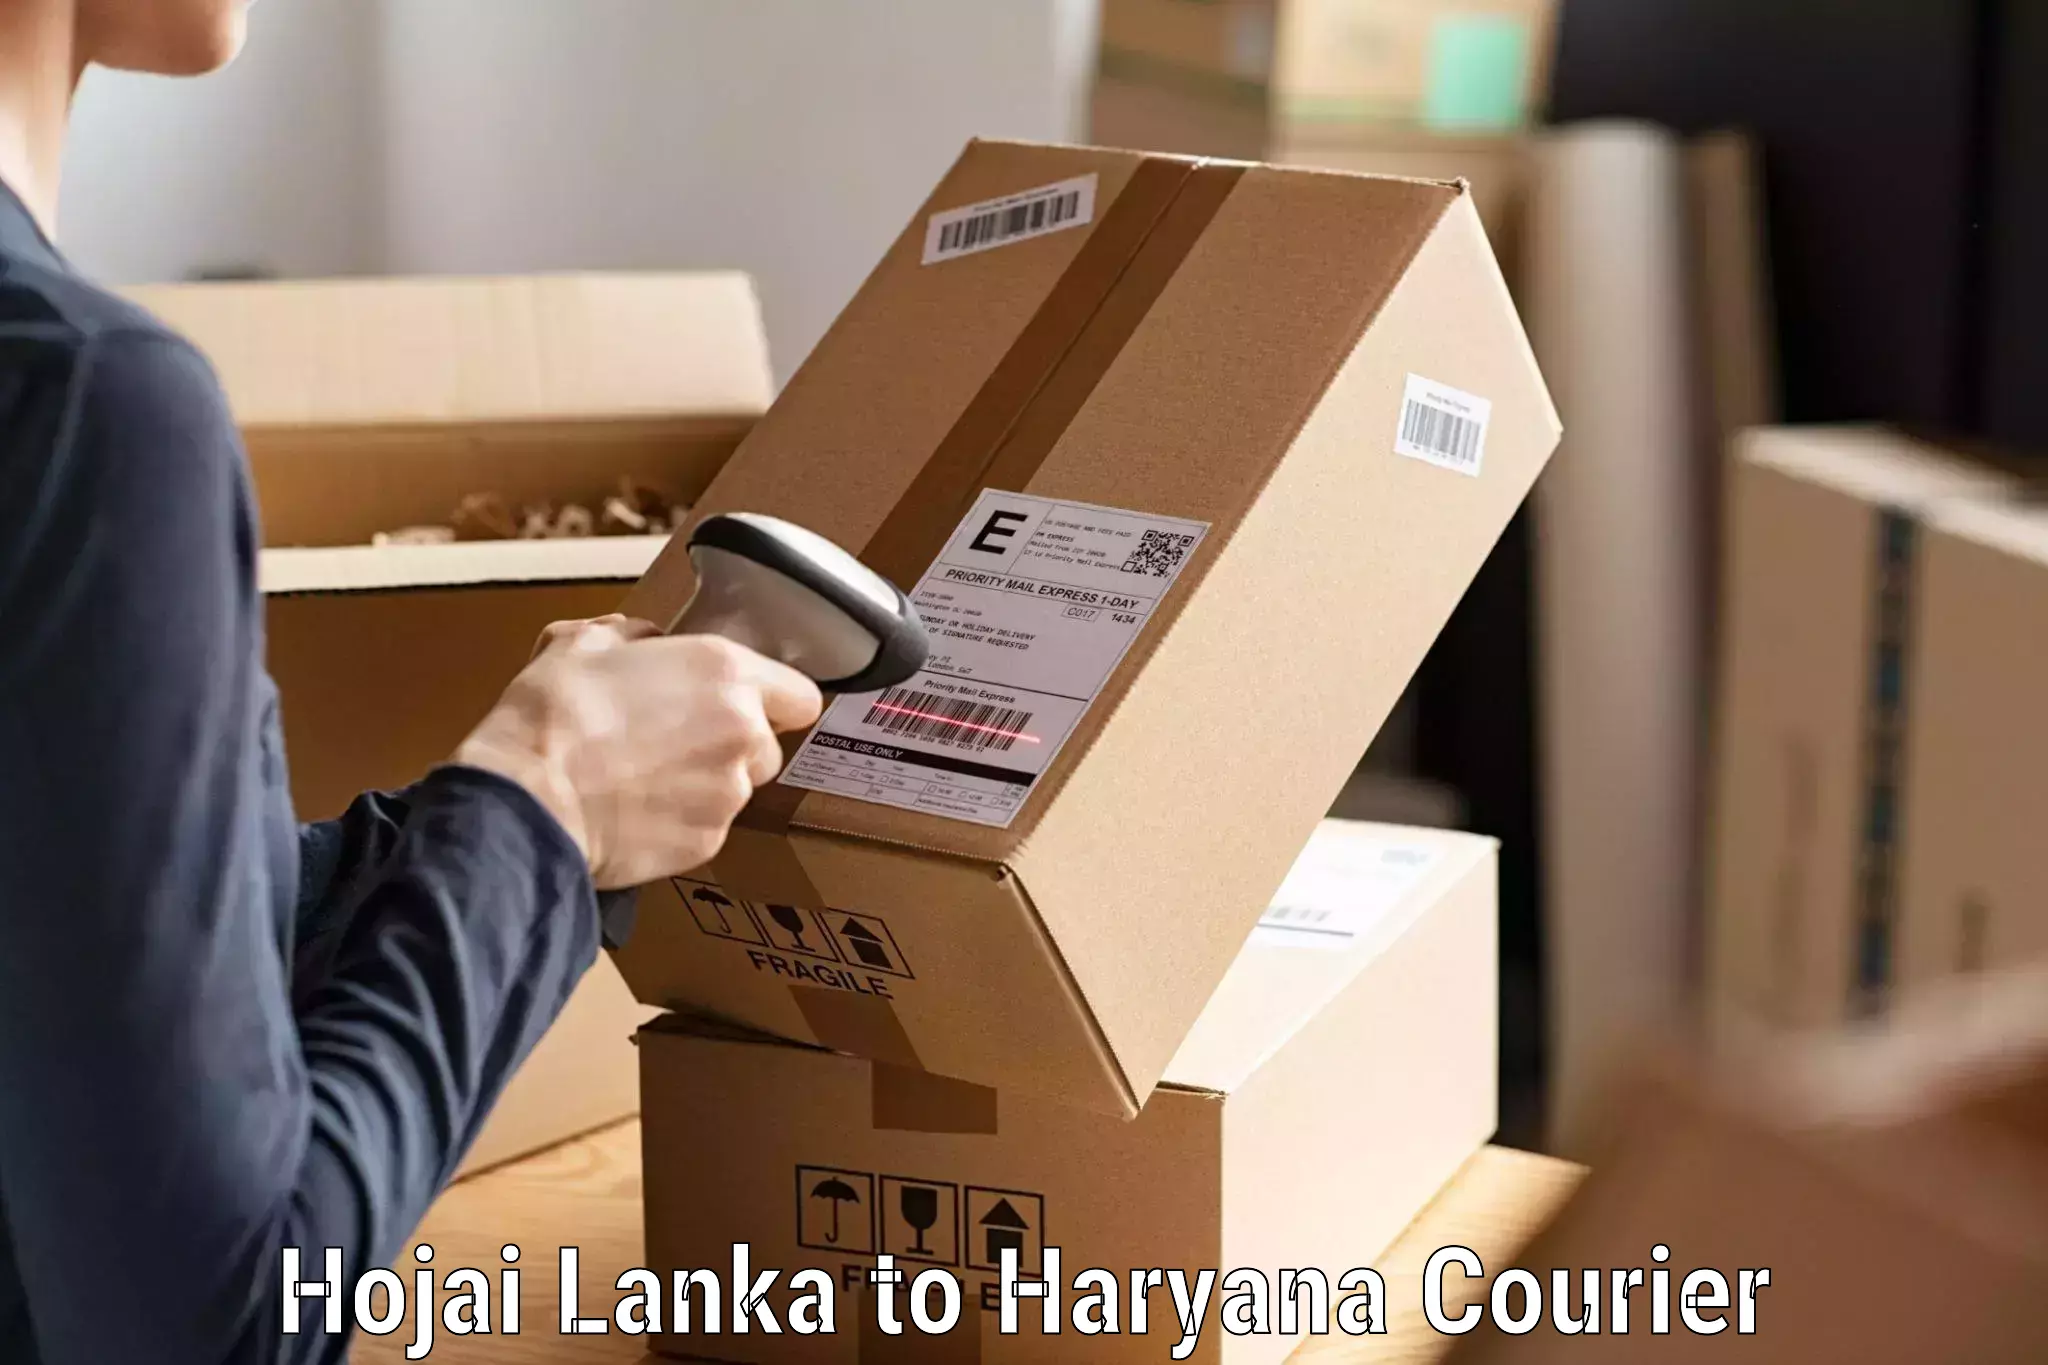 Advanced shipping technology Hojai Lanka to Haryana